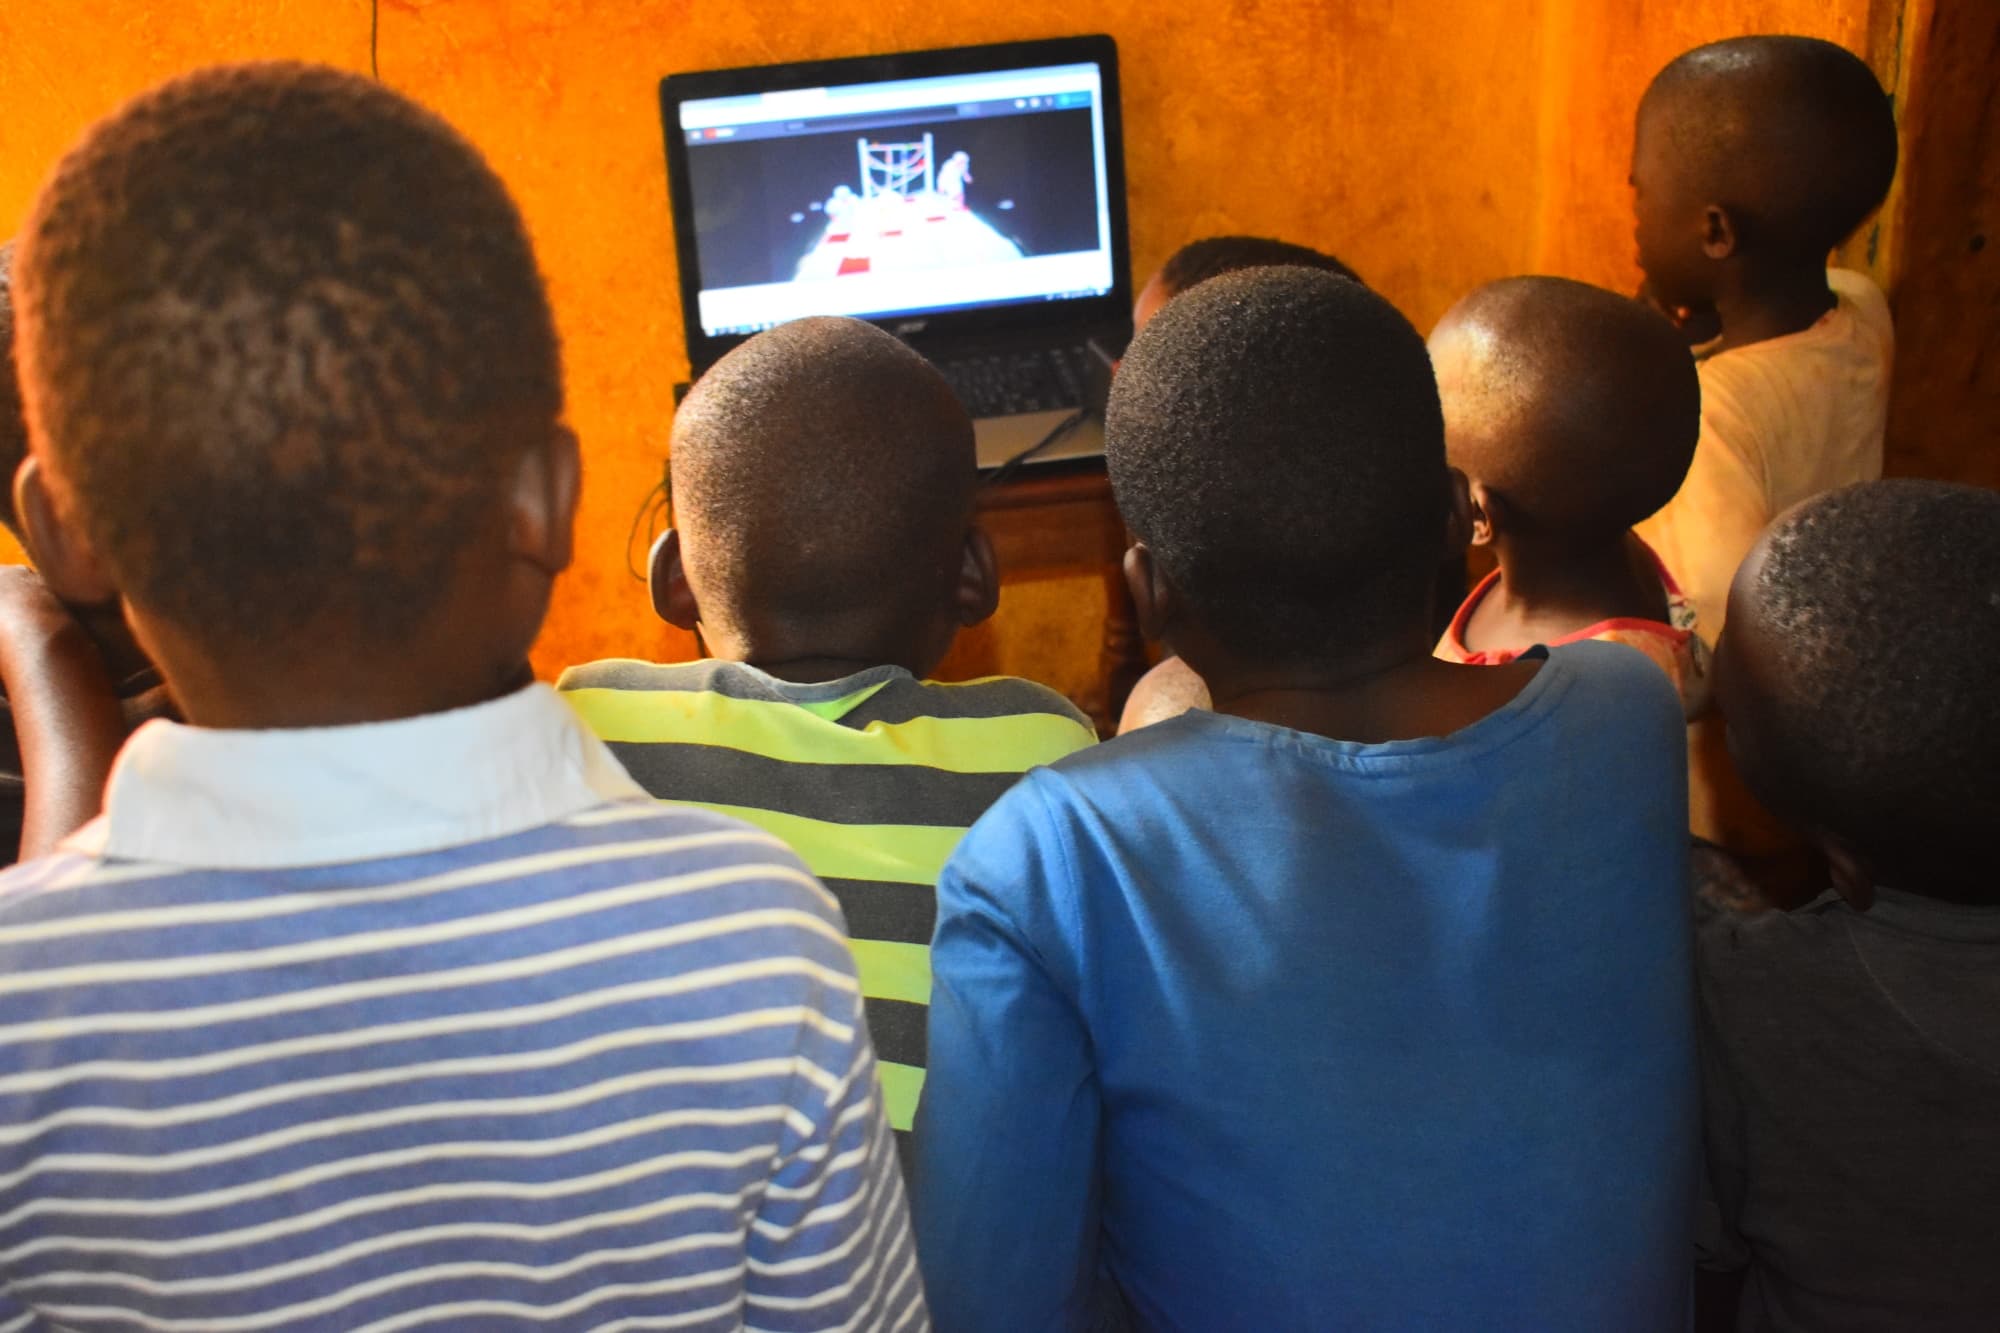 dzieci oglądają spektakl na ekranie